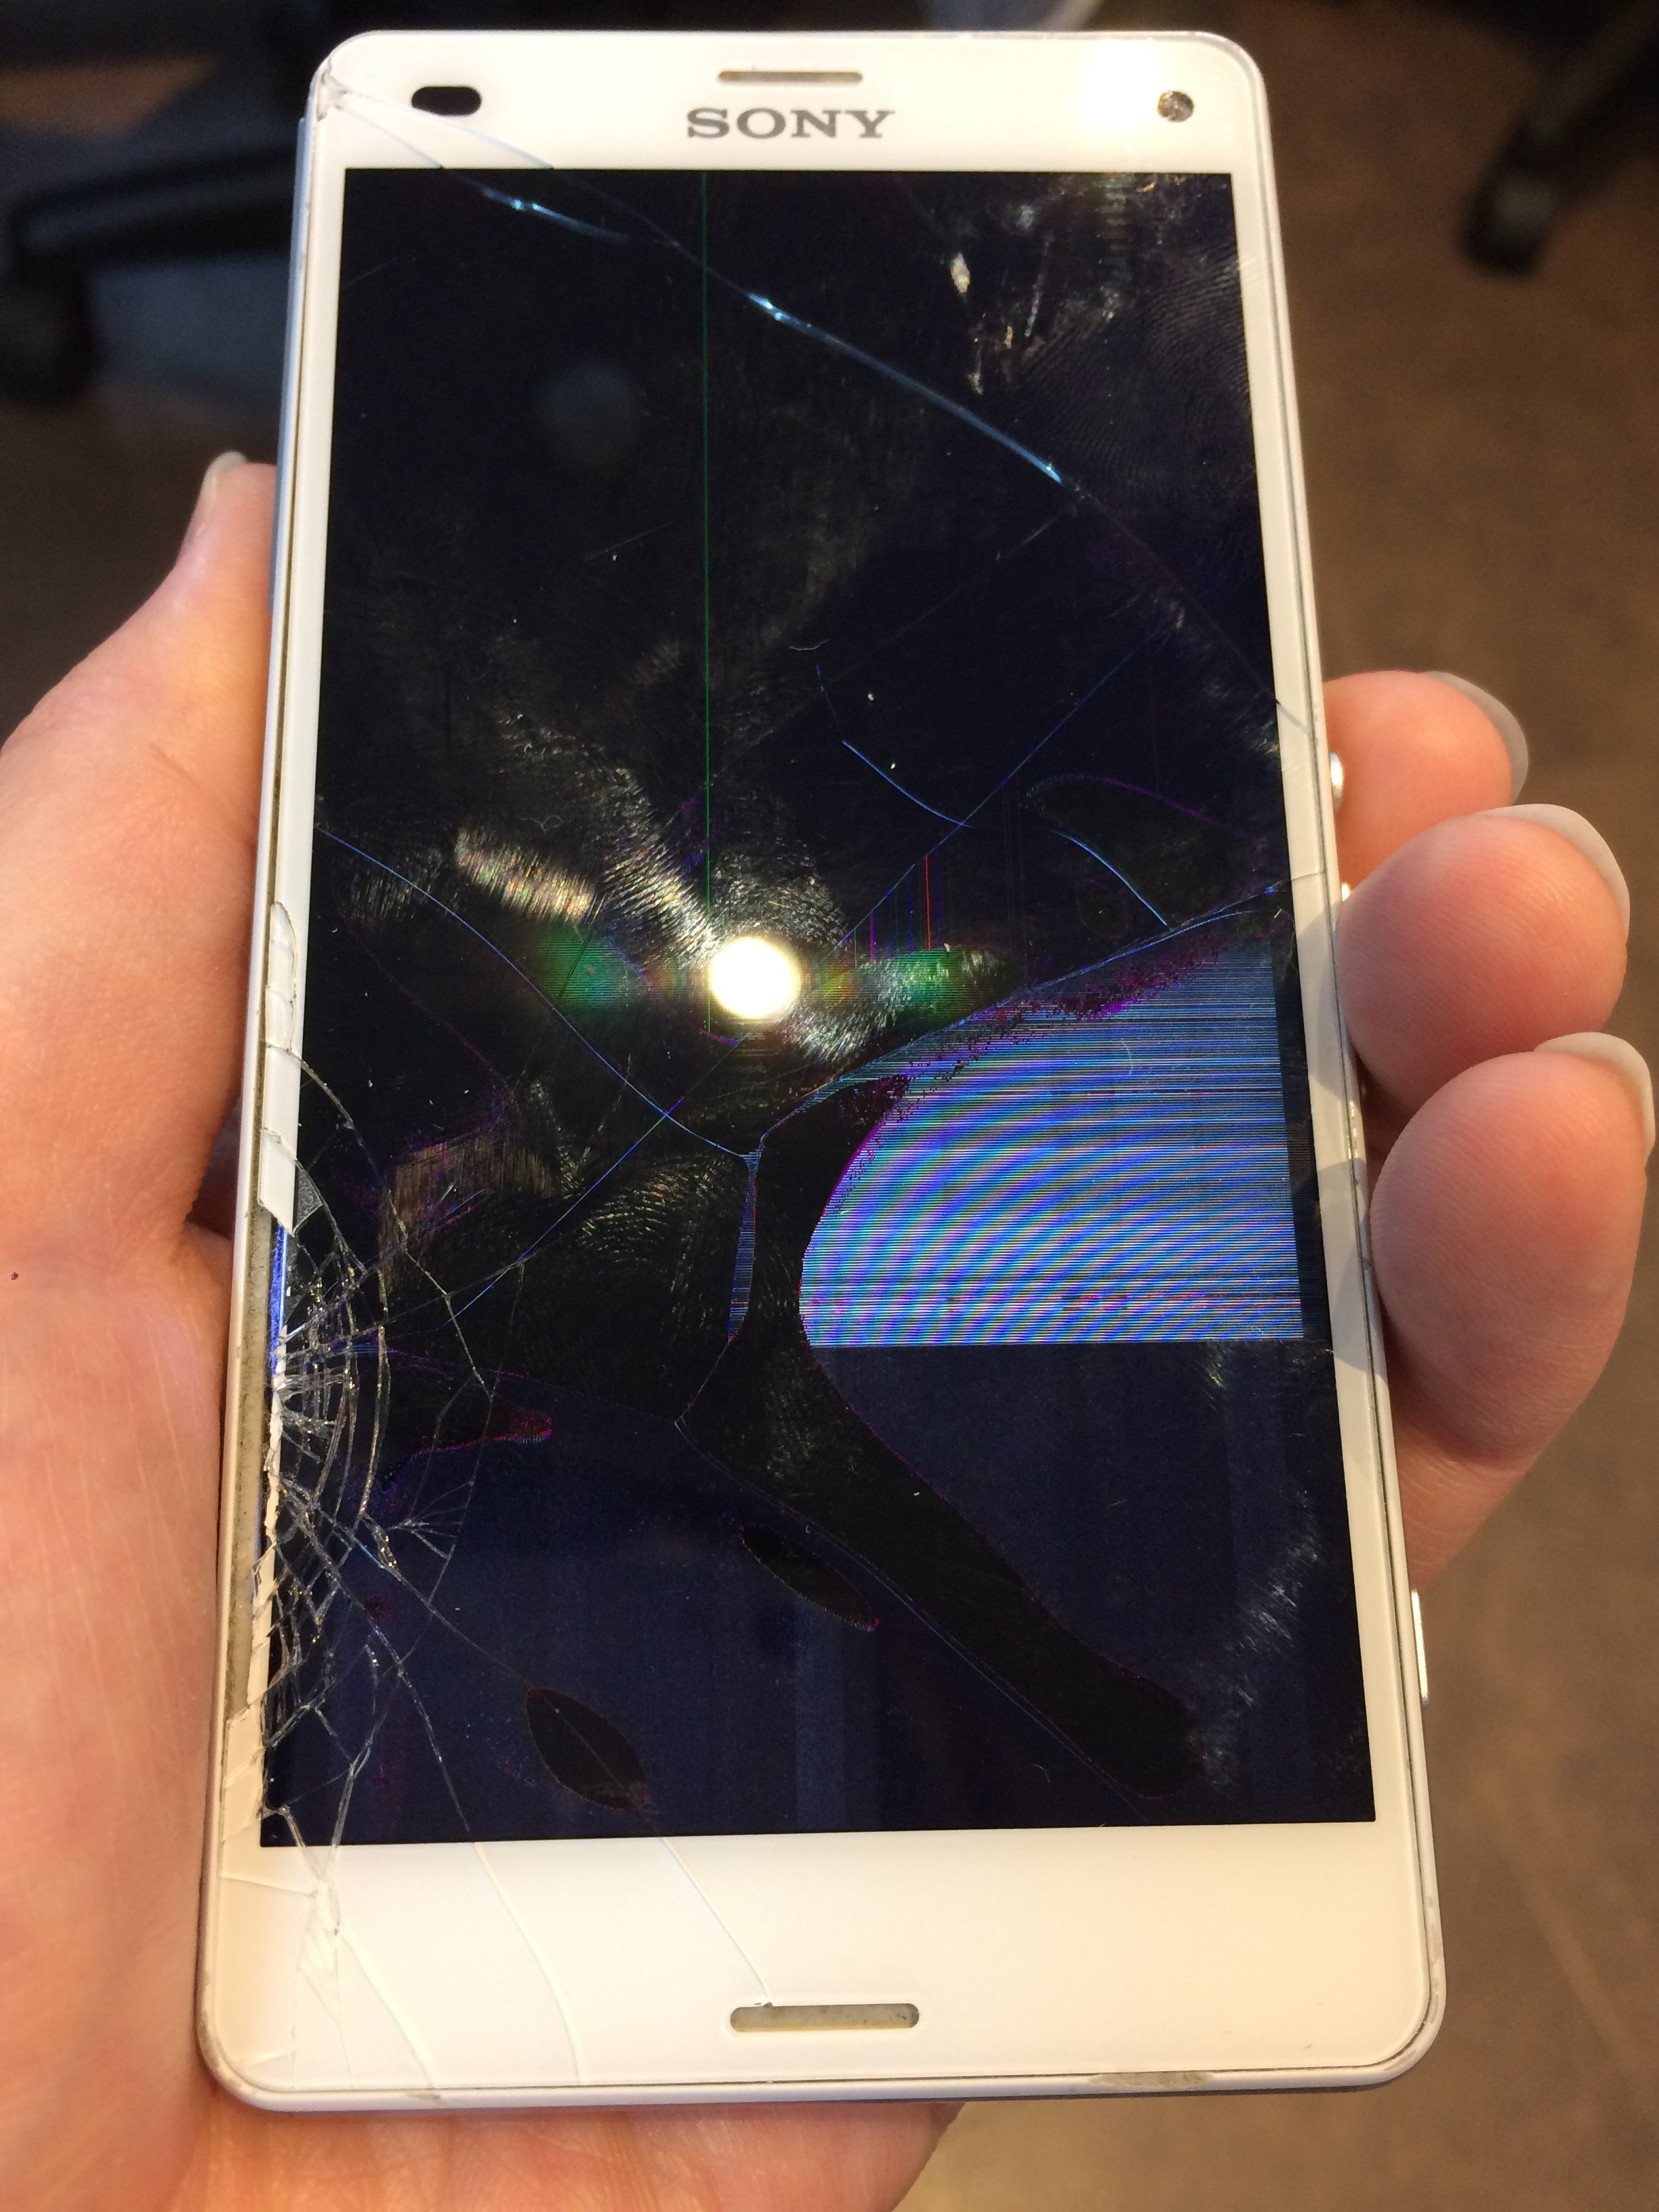 自己修理失敗 液晶壊れ Xperia Z3compactガラス 液晶交換修理 Xperia Galaxy Zenfone Huawei Nexus修理のアンドロイドホスピタル